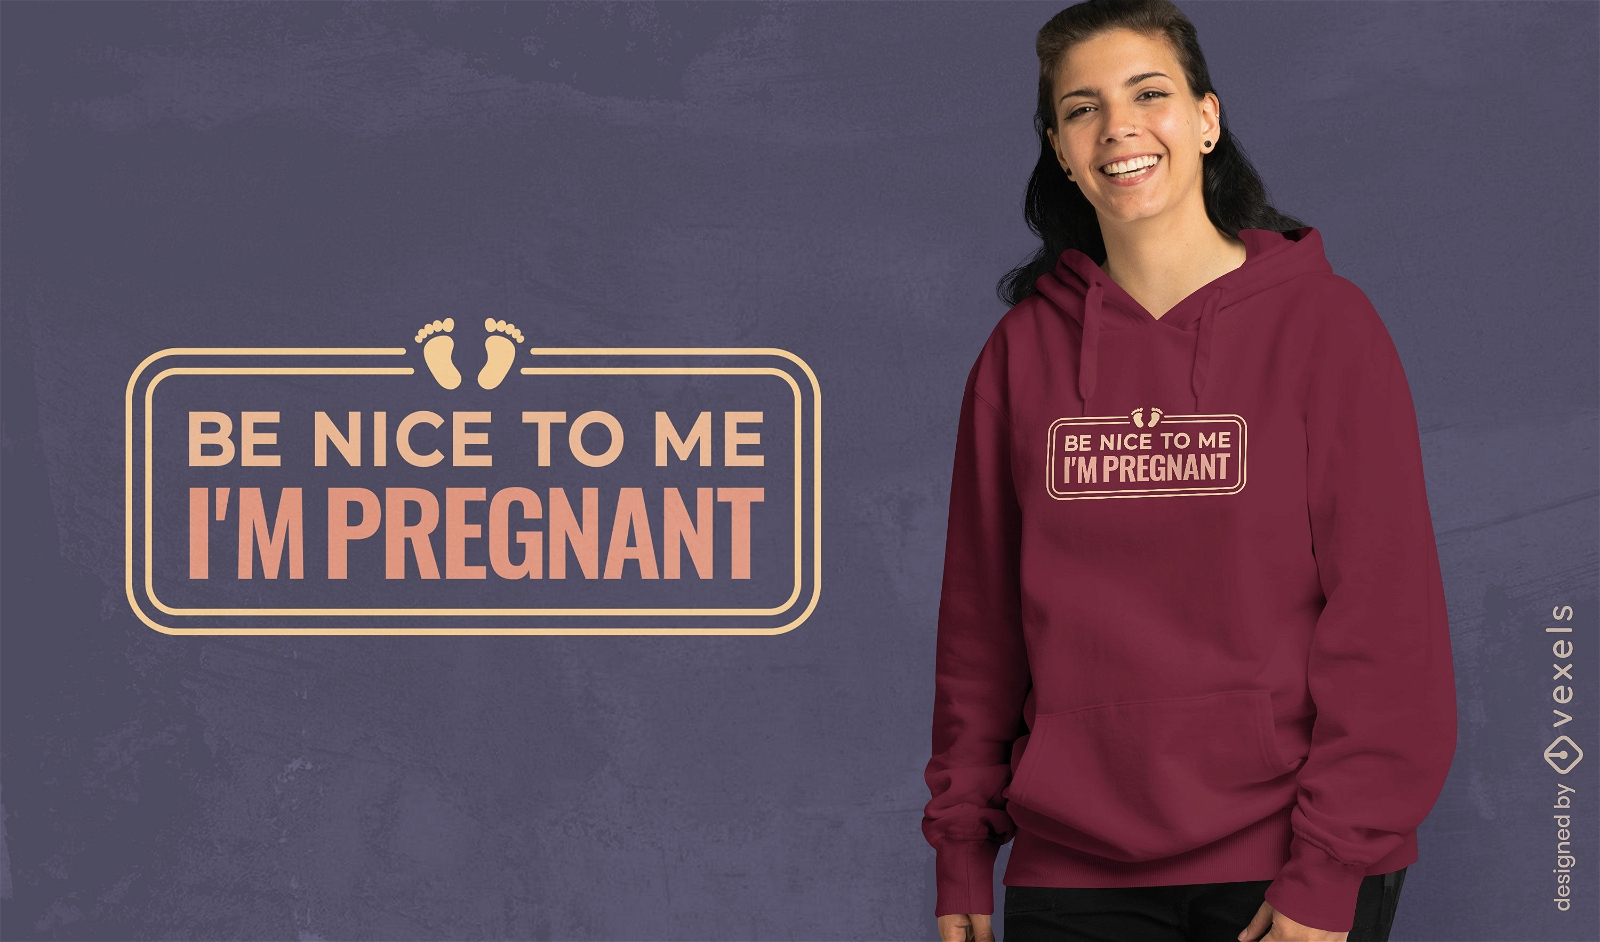 Diseño de camiseta amigable para el embarazo.